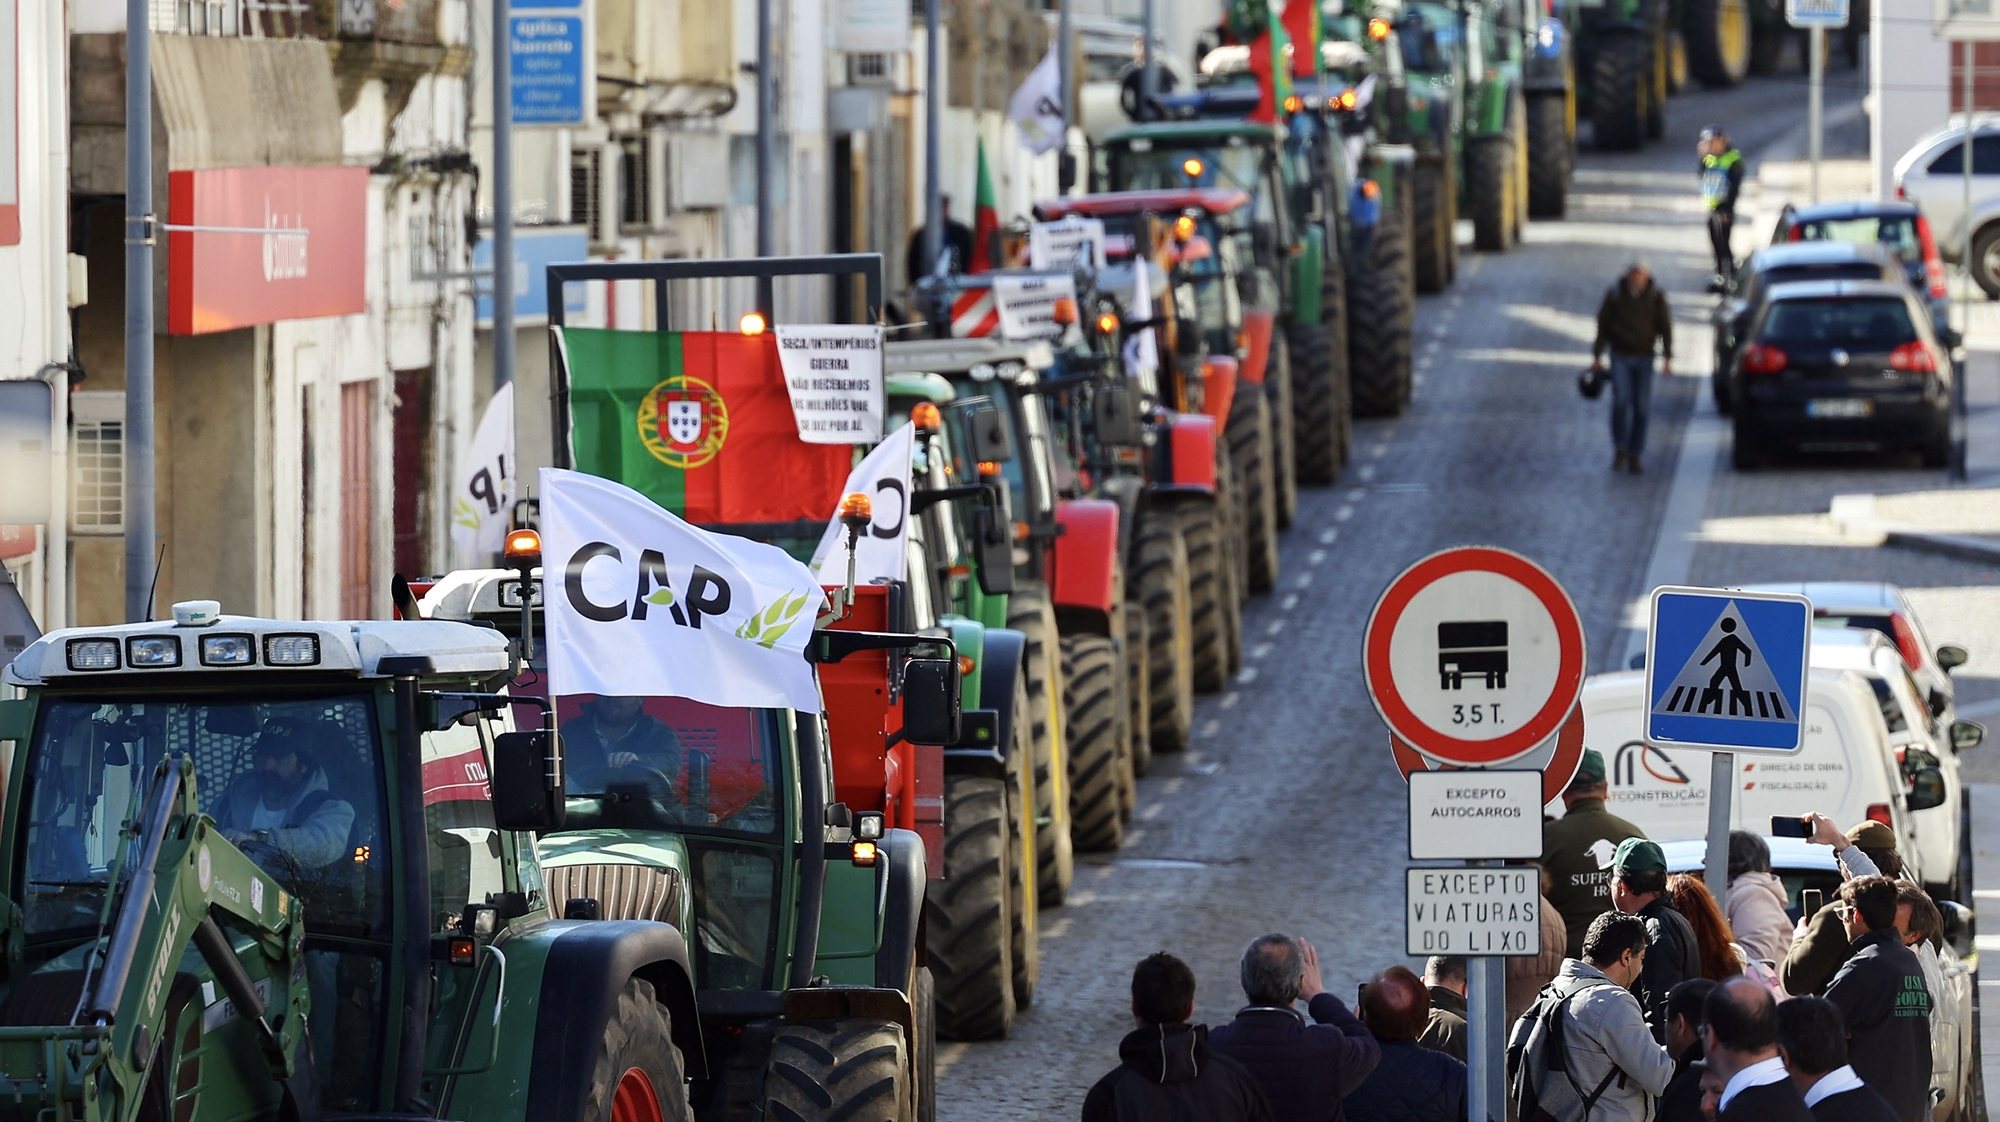 Agricultores participam na marcha de protesto do setor, convocada pela CAP - Confederação dos Agricultores de Portugal, em Portalegre, 09 de fevereiro de 2023. NUNO VEIGA/LUSA